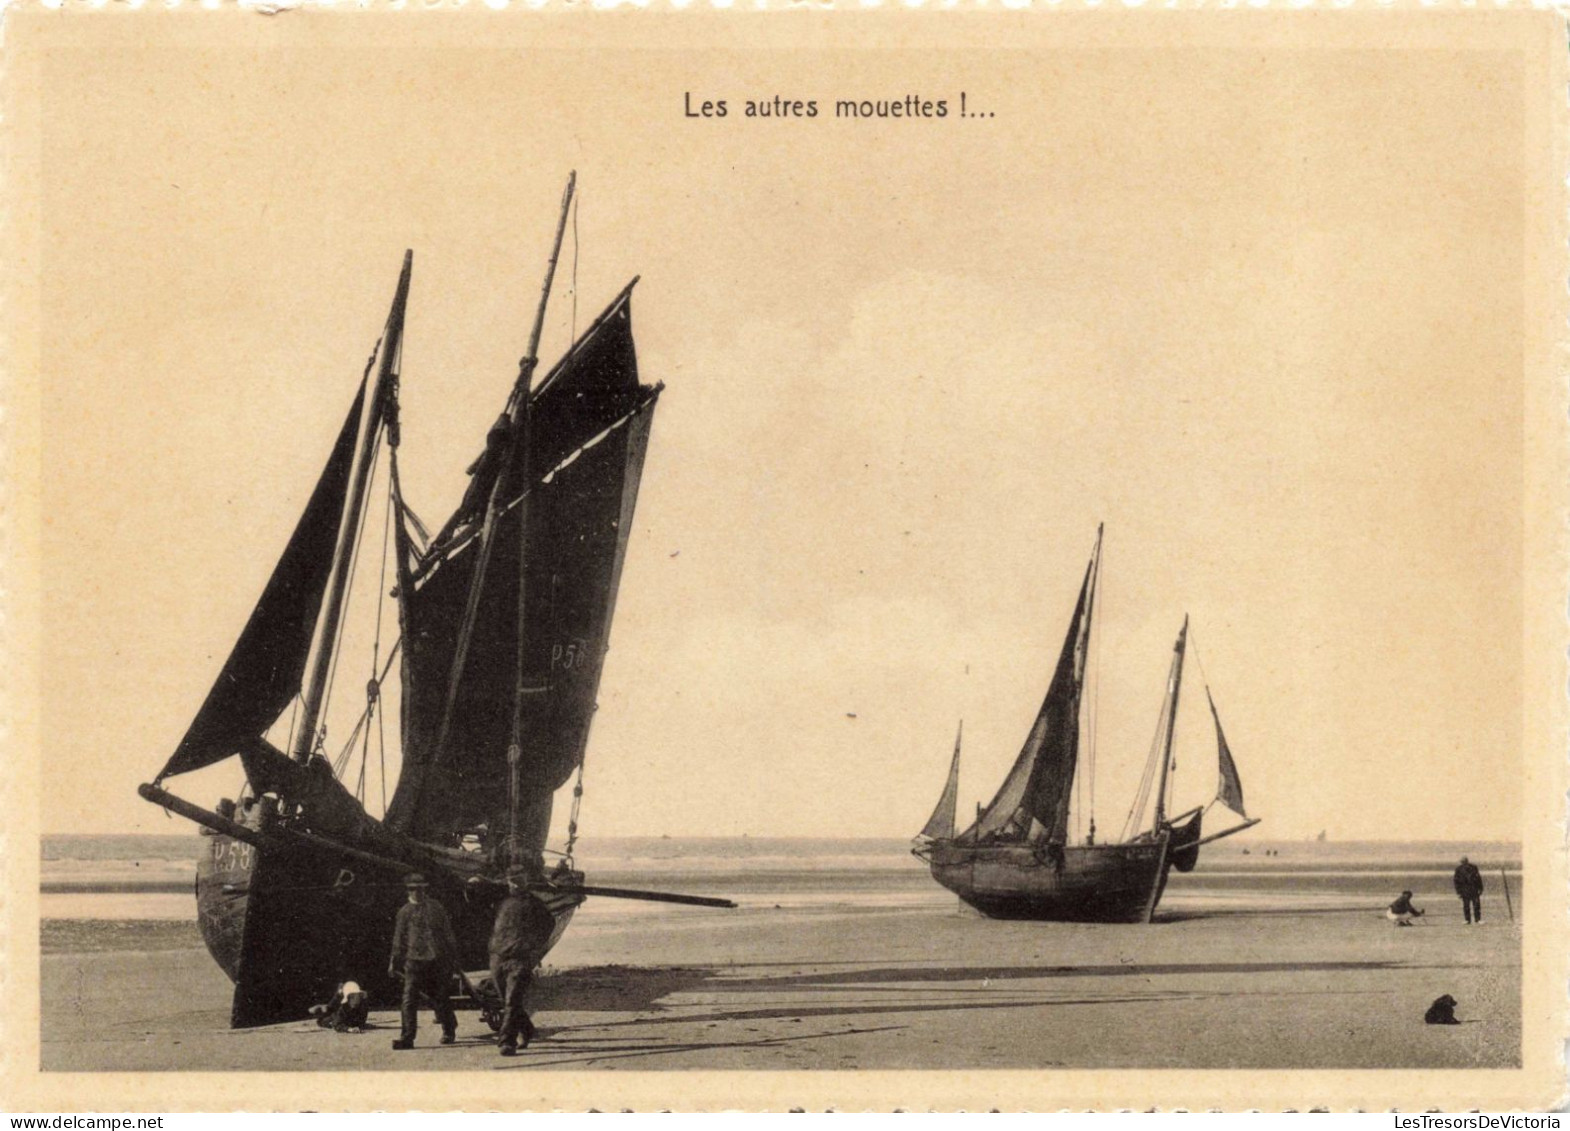 TRANSPORTS - Bateaux - Voiliers - Les Autres Mouettes - Carte Postale Ancienne - Sailing Vessels